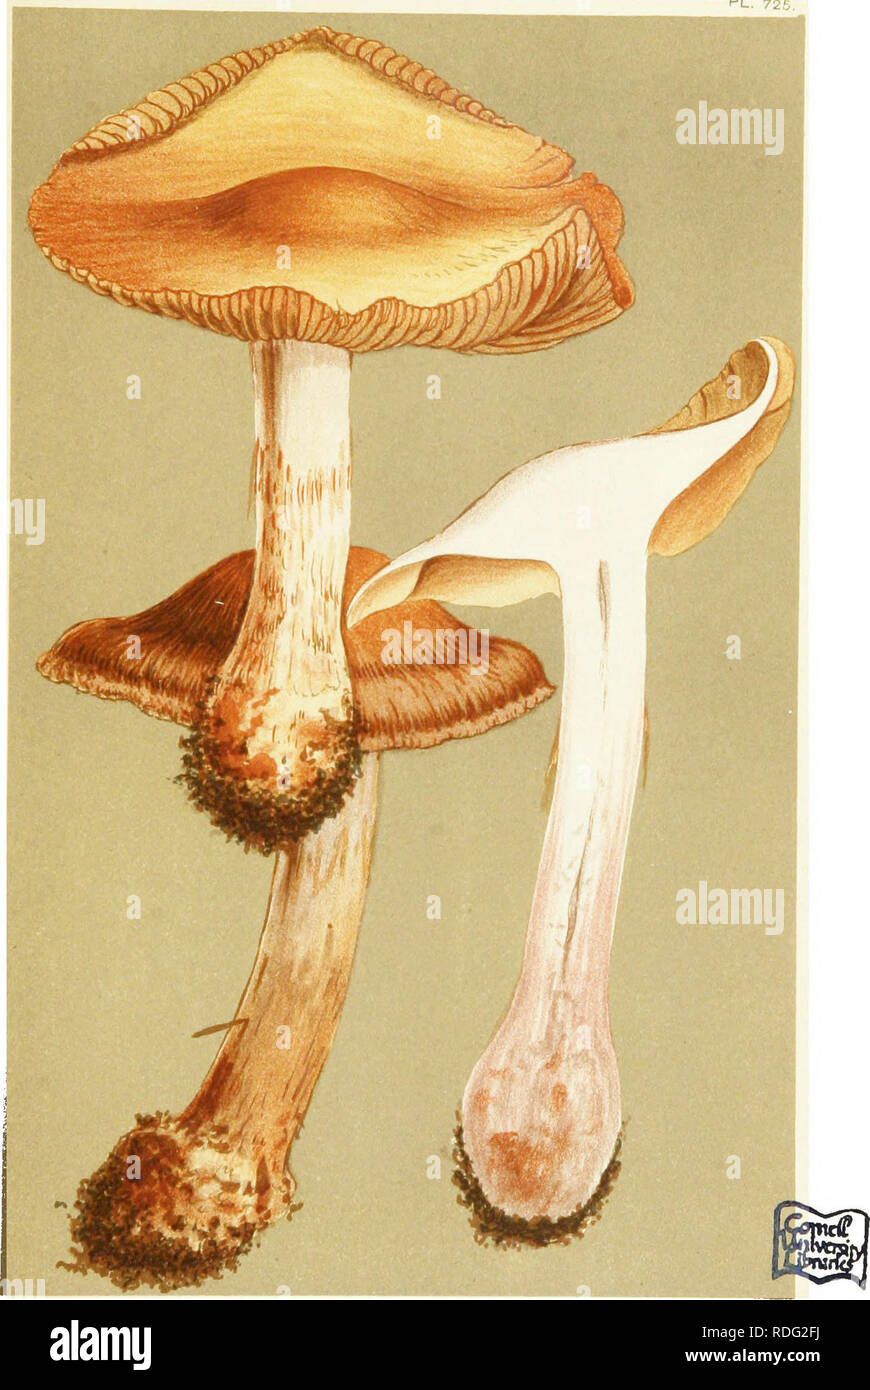 . Le illustrazioni della British funghi Hymenomycetes) per servire come un atlante per il "Handbook of British funghi". Funghi; Botanica. 7/^- PL. 726. CORTINARIUS (PHLEGMACIUM) PURPURASCENS. var SUBPURPURASCENS. Fries omongH foglie di faggio. Mnnk il legno^ Eppiiig, ottobre 1883.. Si prega di notare che queste immagini vengono estratte dalla pagina sottoposta a scansione di immagini che possono essere state migliorate digitalmente per la leggibilità - Colorazione e aspetto di queste illustrazioni potrebbero non perfettamente assomigliano al lavoro originale. Cooke, M. C. (Mardocheo Cubitt), b. 1825; Cooke, M. C. (Mardocheo Cubitt), b. 1825. Handbook of British funghi. Lon Foto Stock